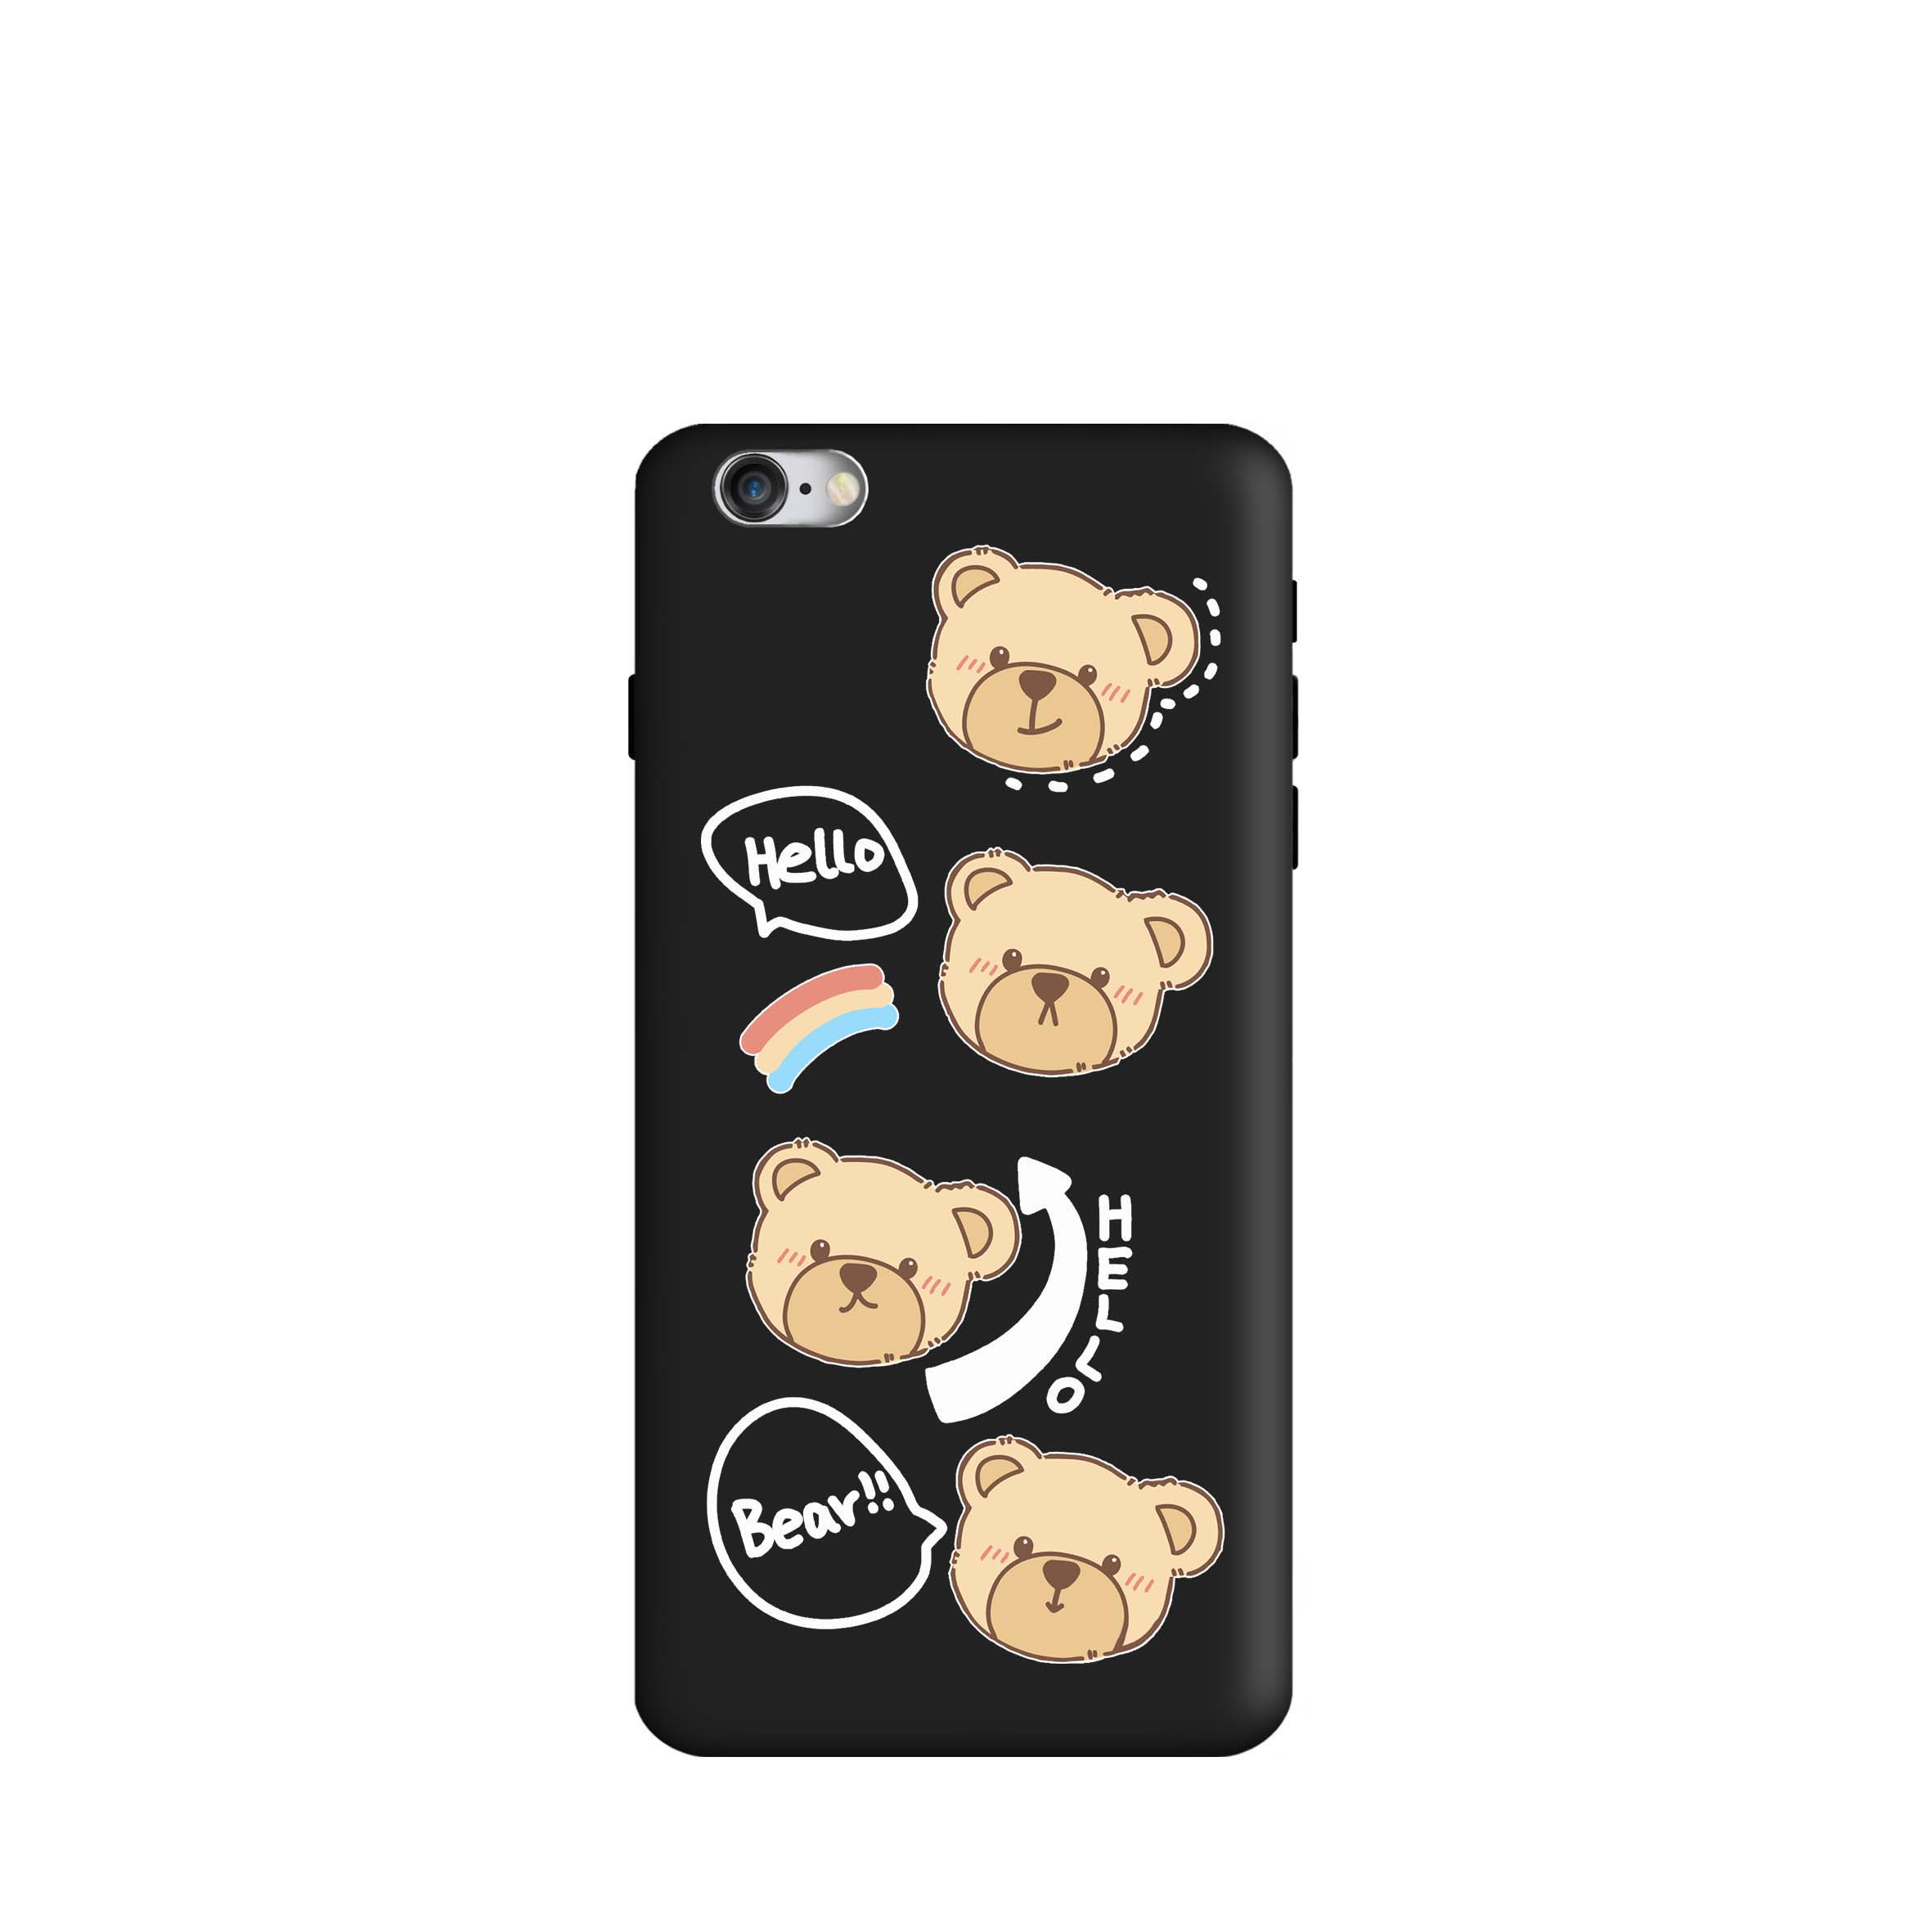 کاور طرح خرس بیر کد m4087 مناسب برای گوشی موبایل اپل iphone 6 / 6s